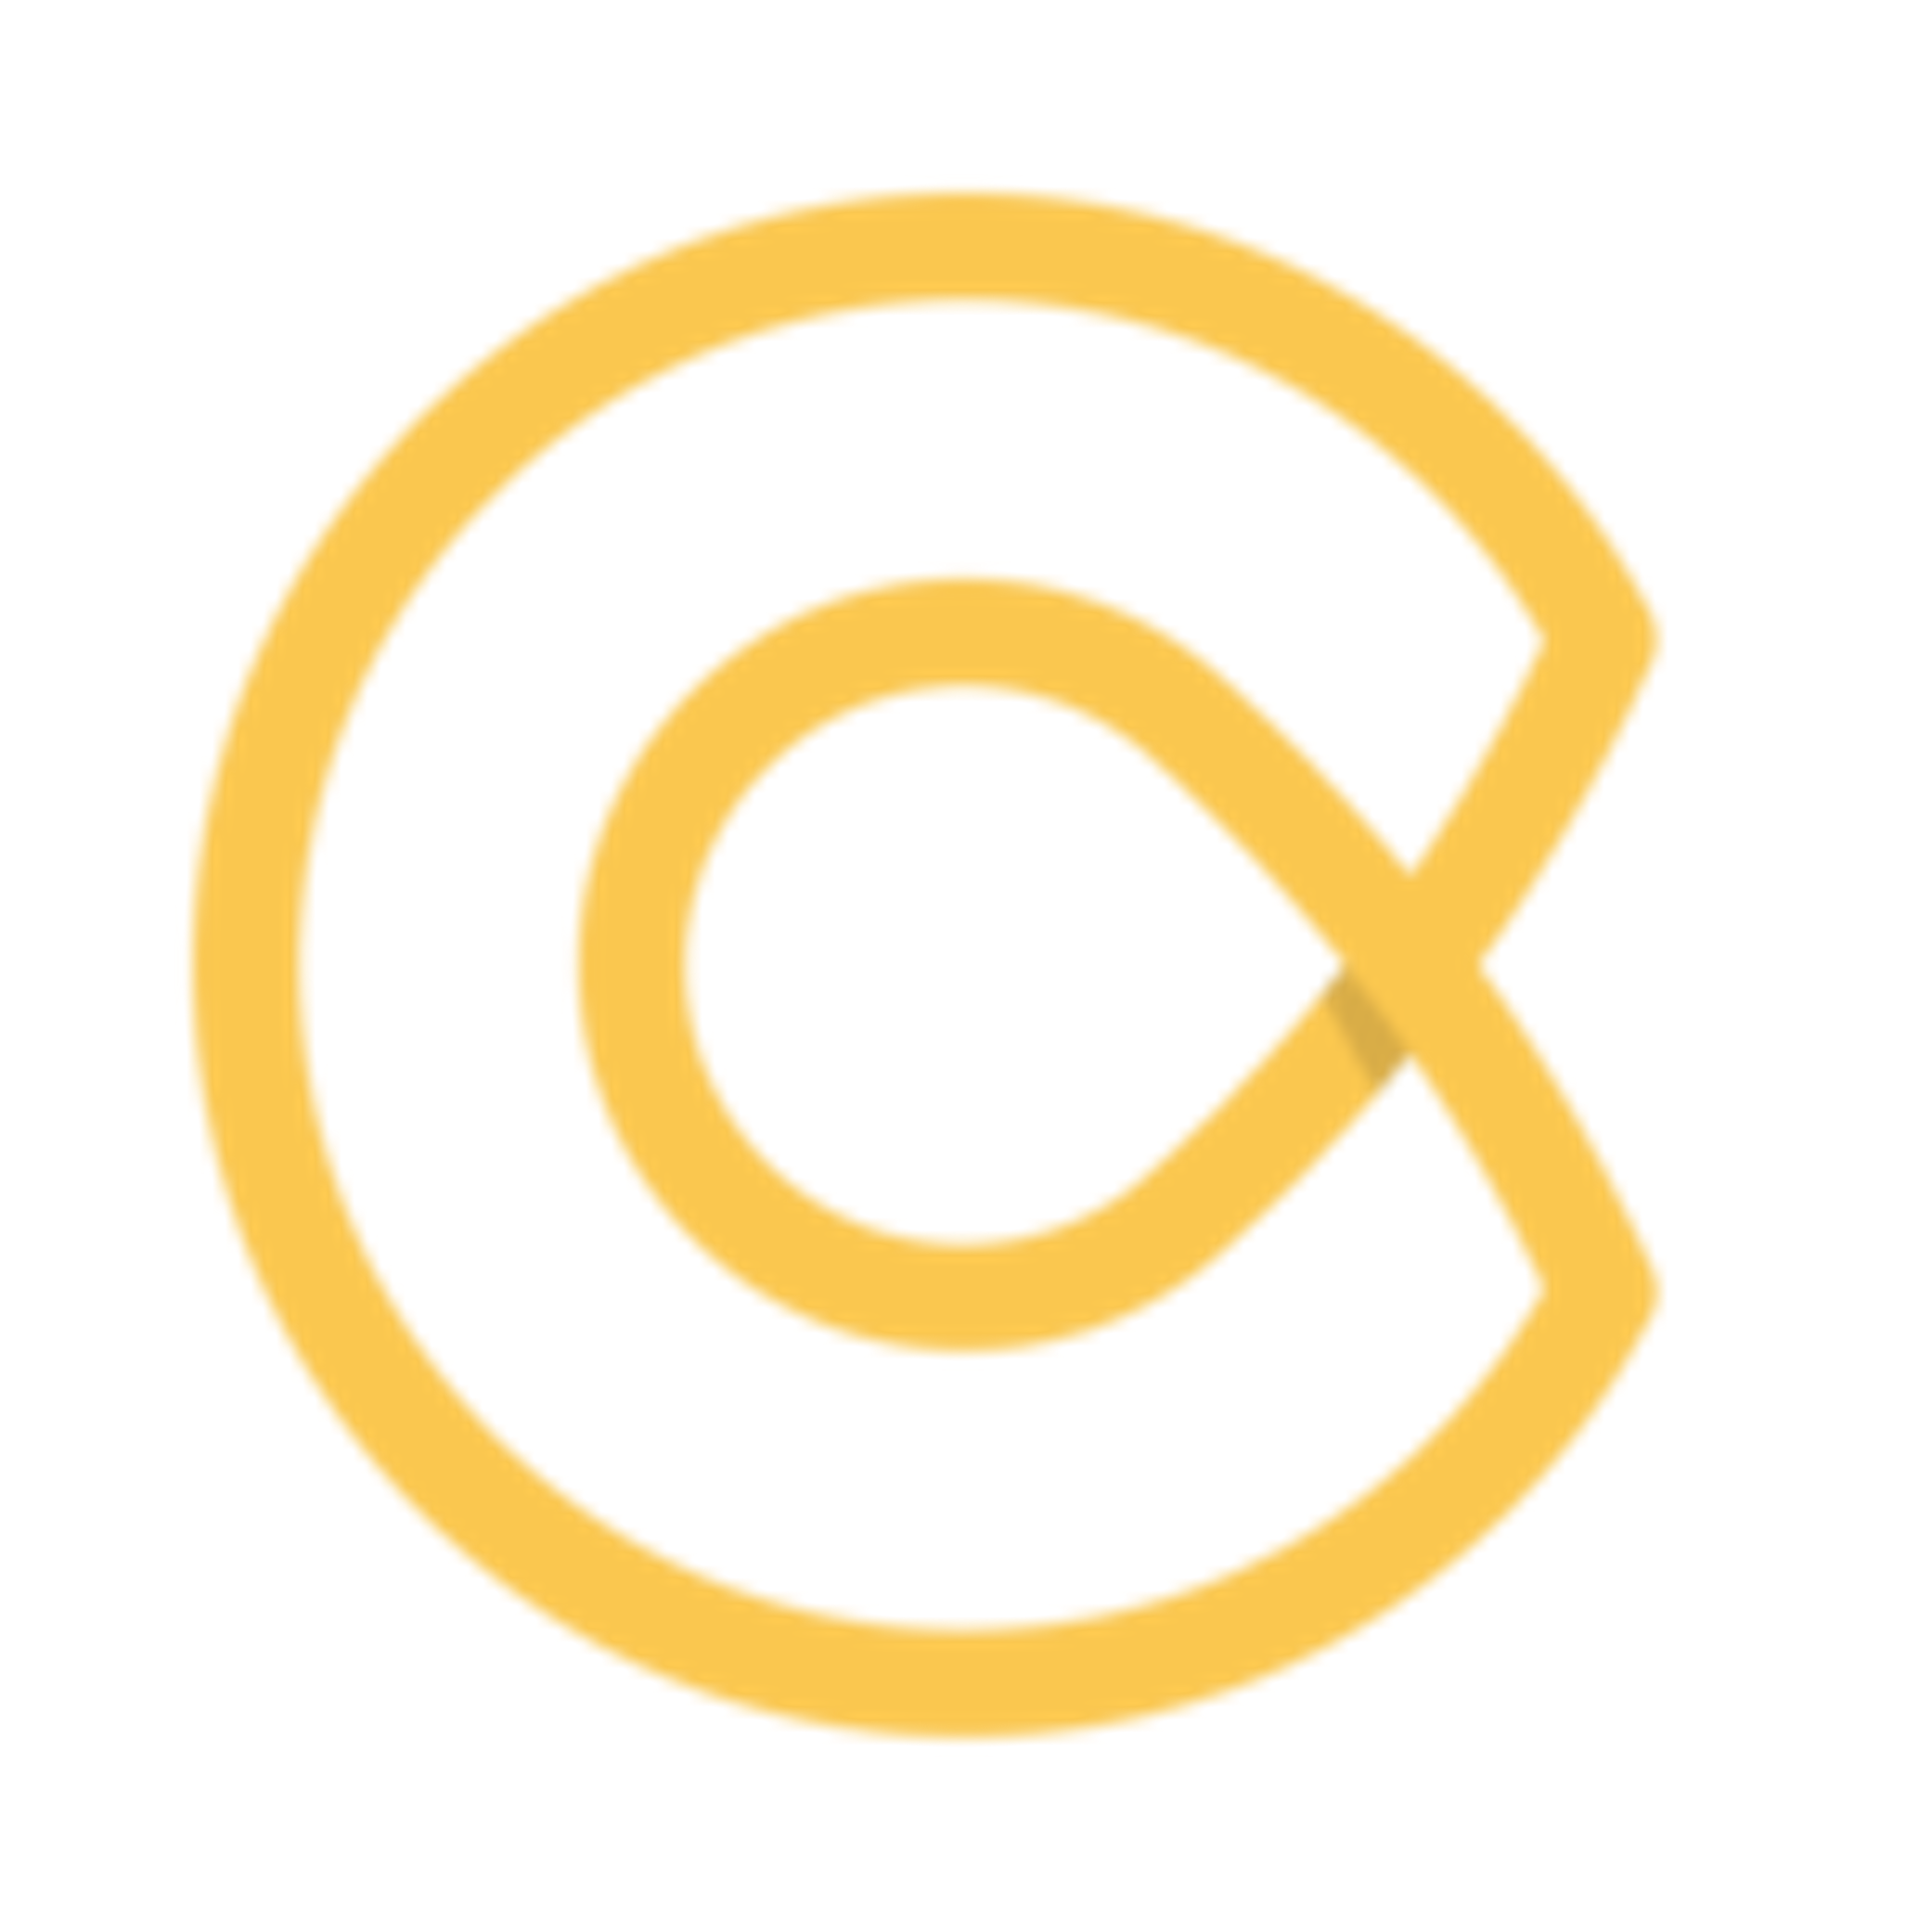 Cronycle Logo